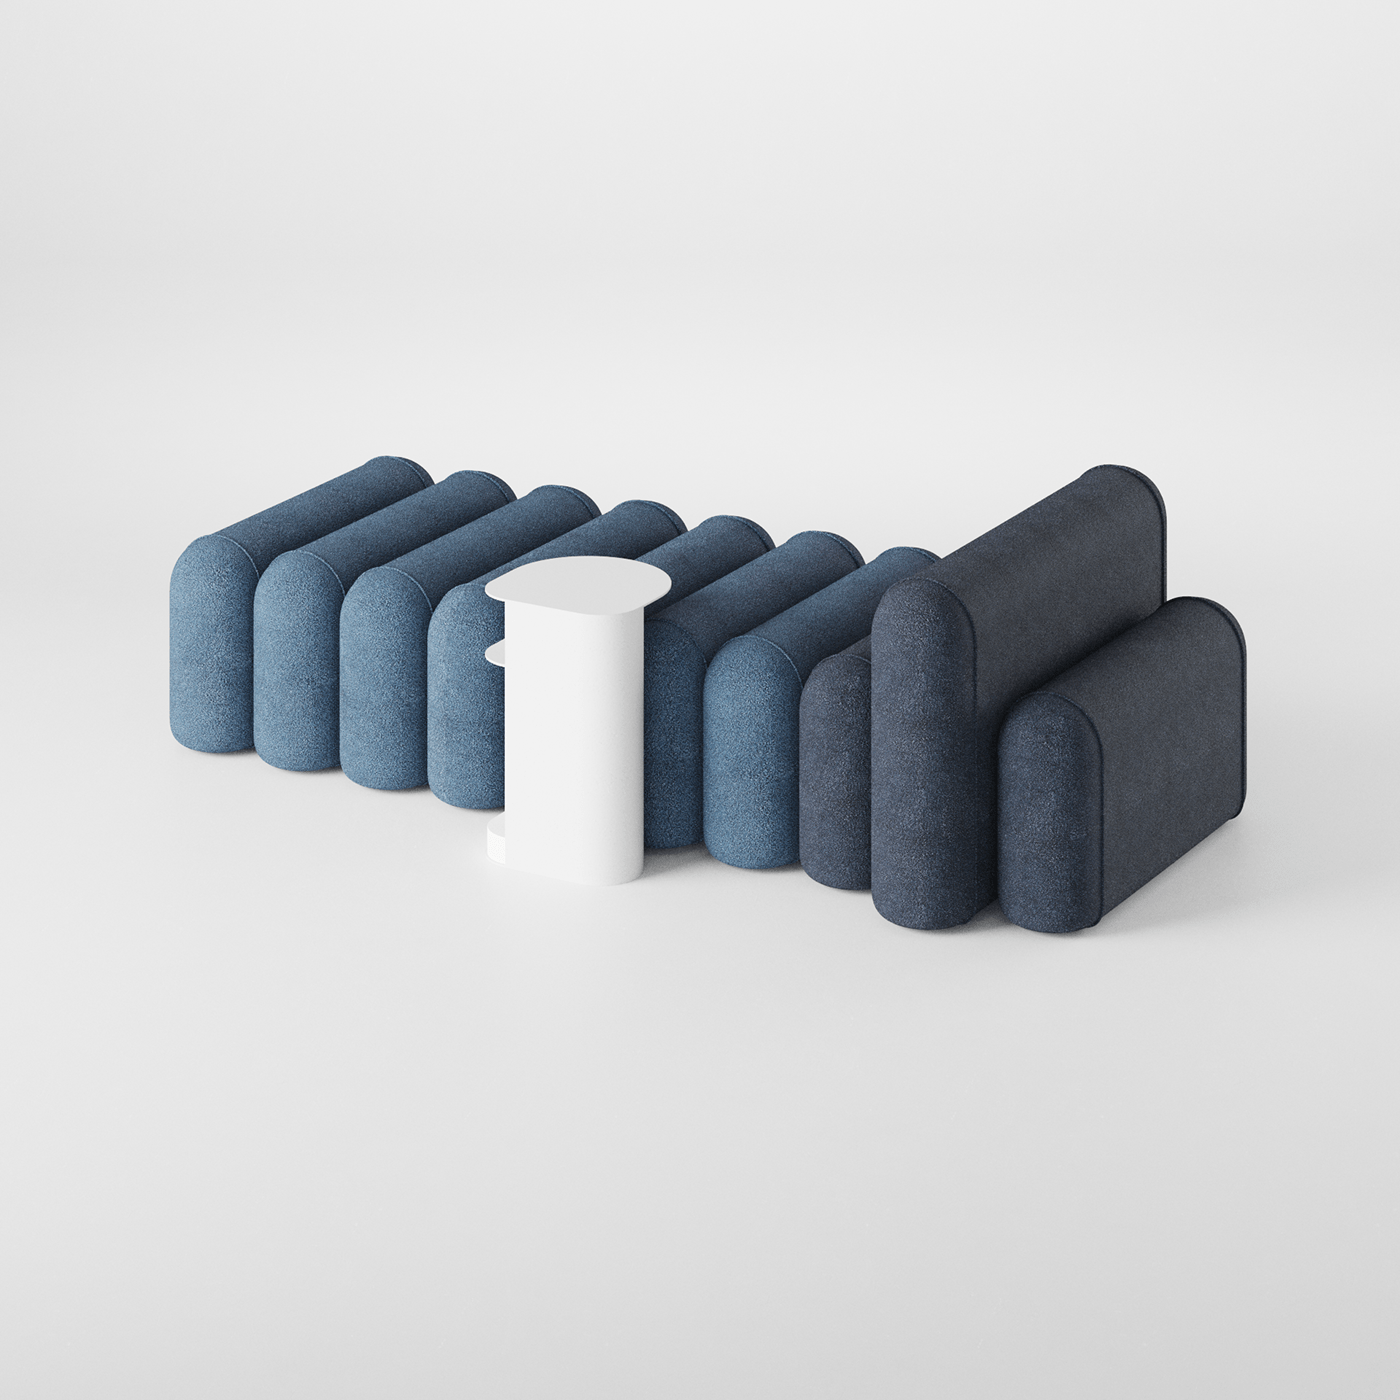 Puffa 胶囊状模块化沙发设计